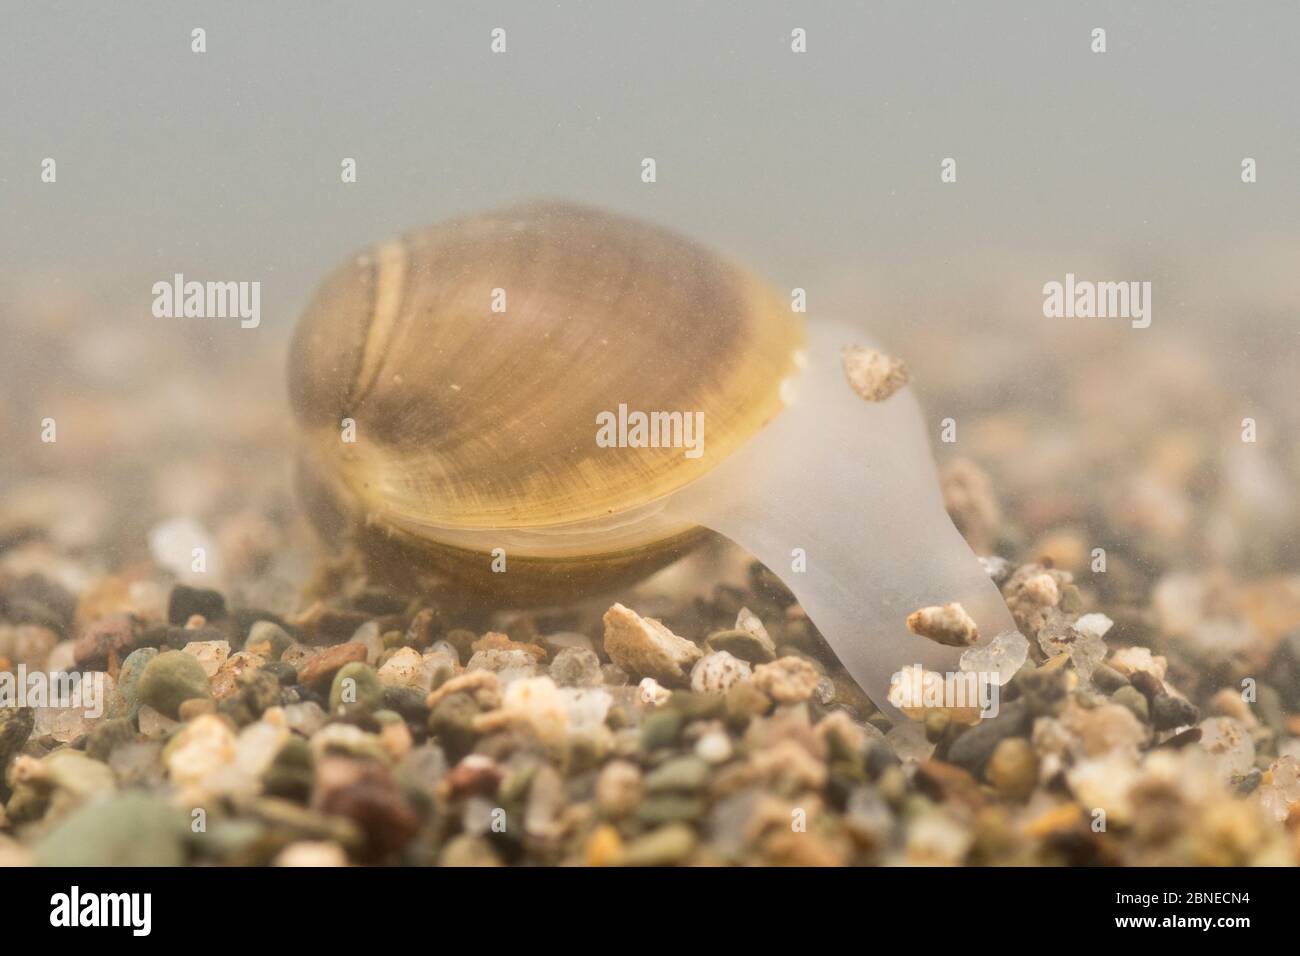 Die in den Sand grabende, feste Orbamuschel (Sphaerium solidum), Europa, Juli. Kontrollierte Bedingungen. Stockfoto